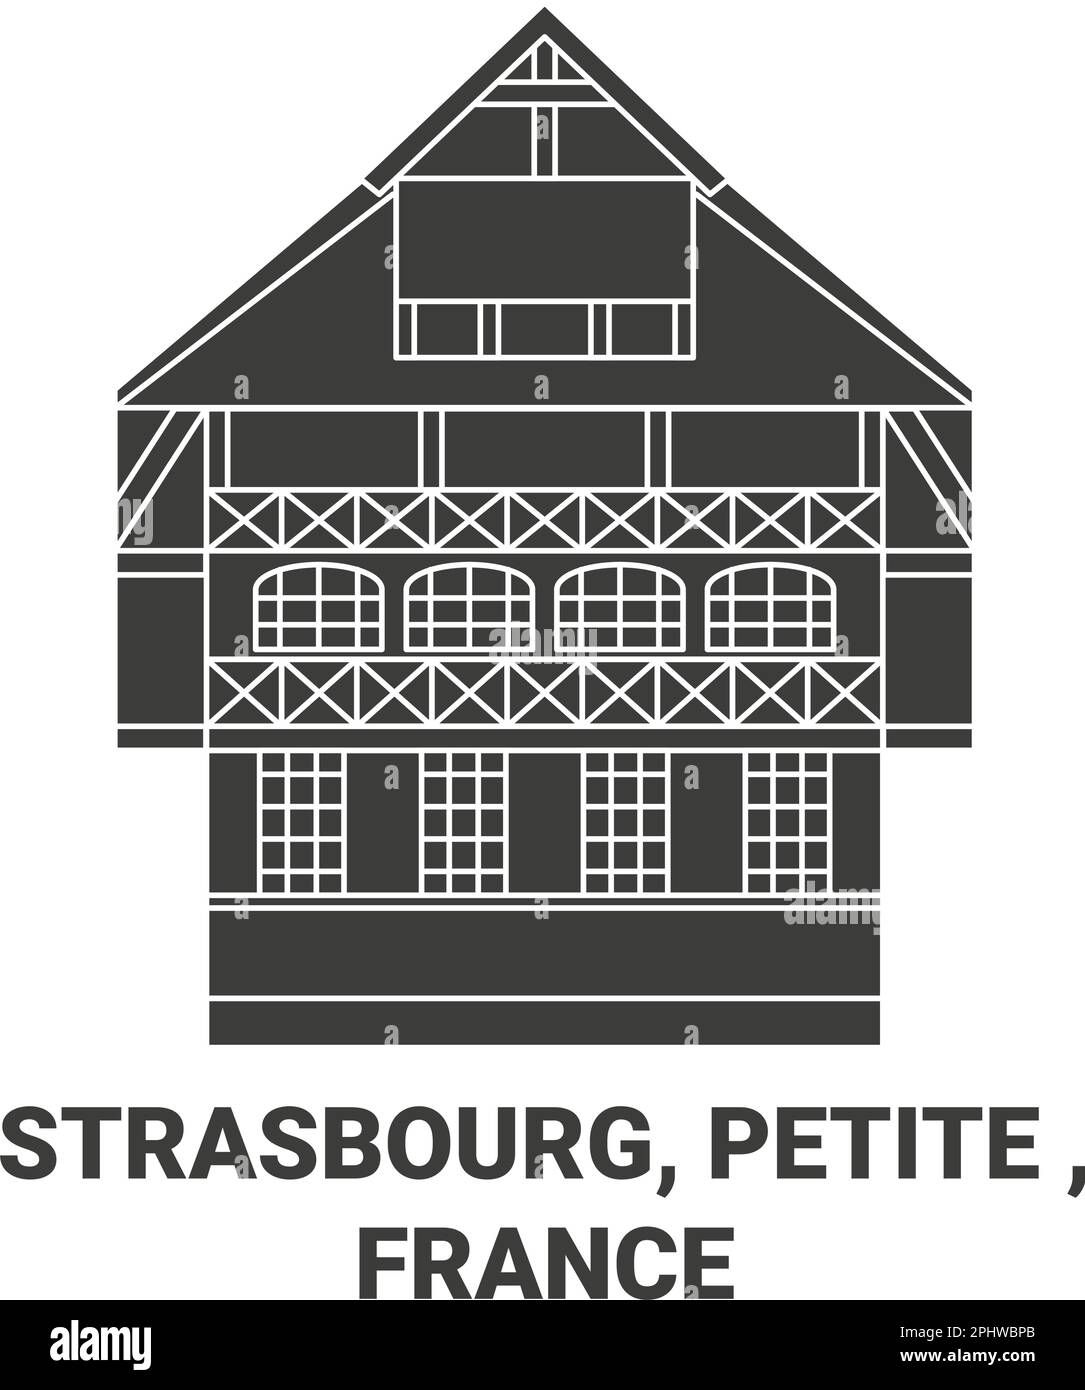 France, Strasbourg, petite voyage illustration vectorielle Illustration de Vecteur